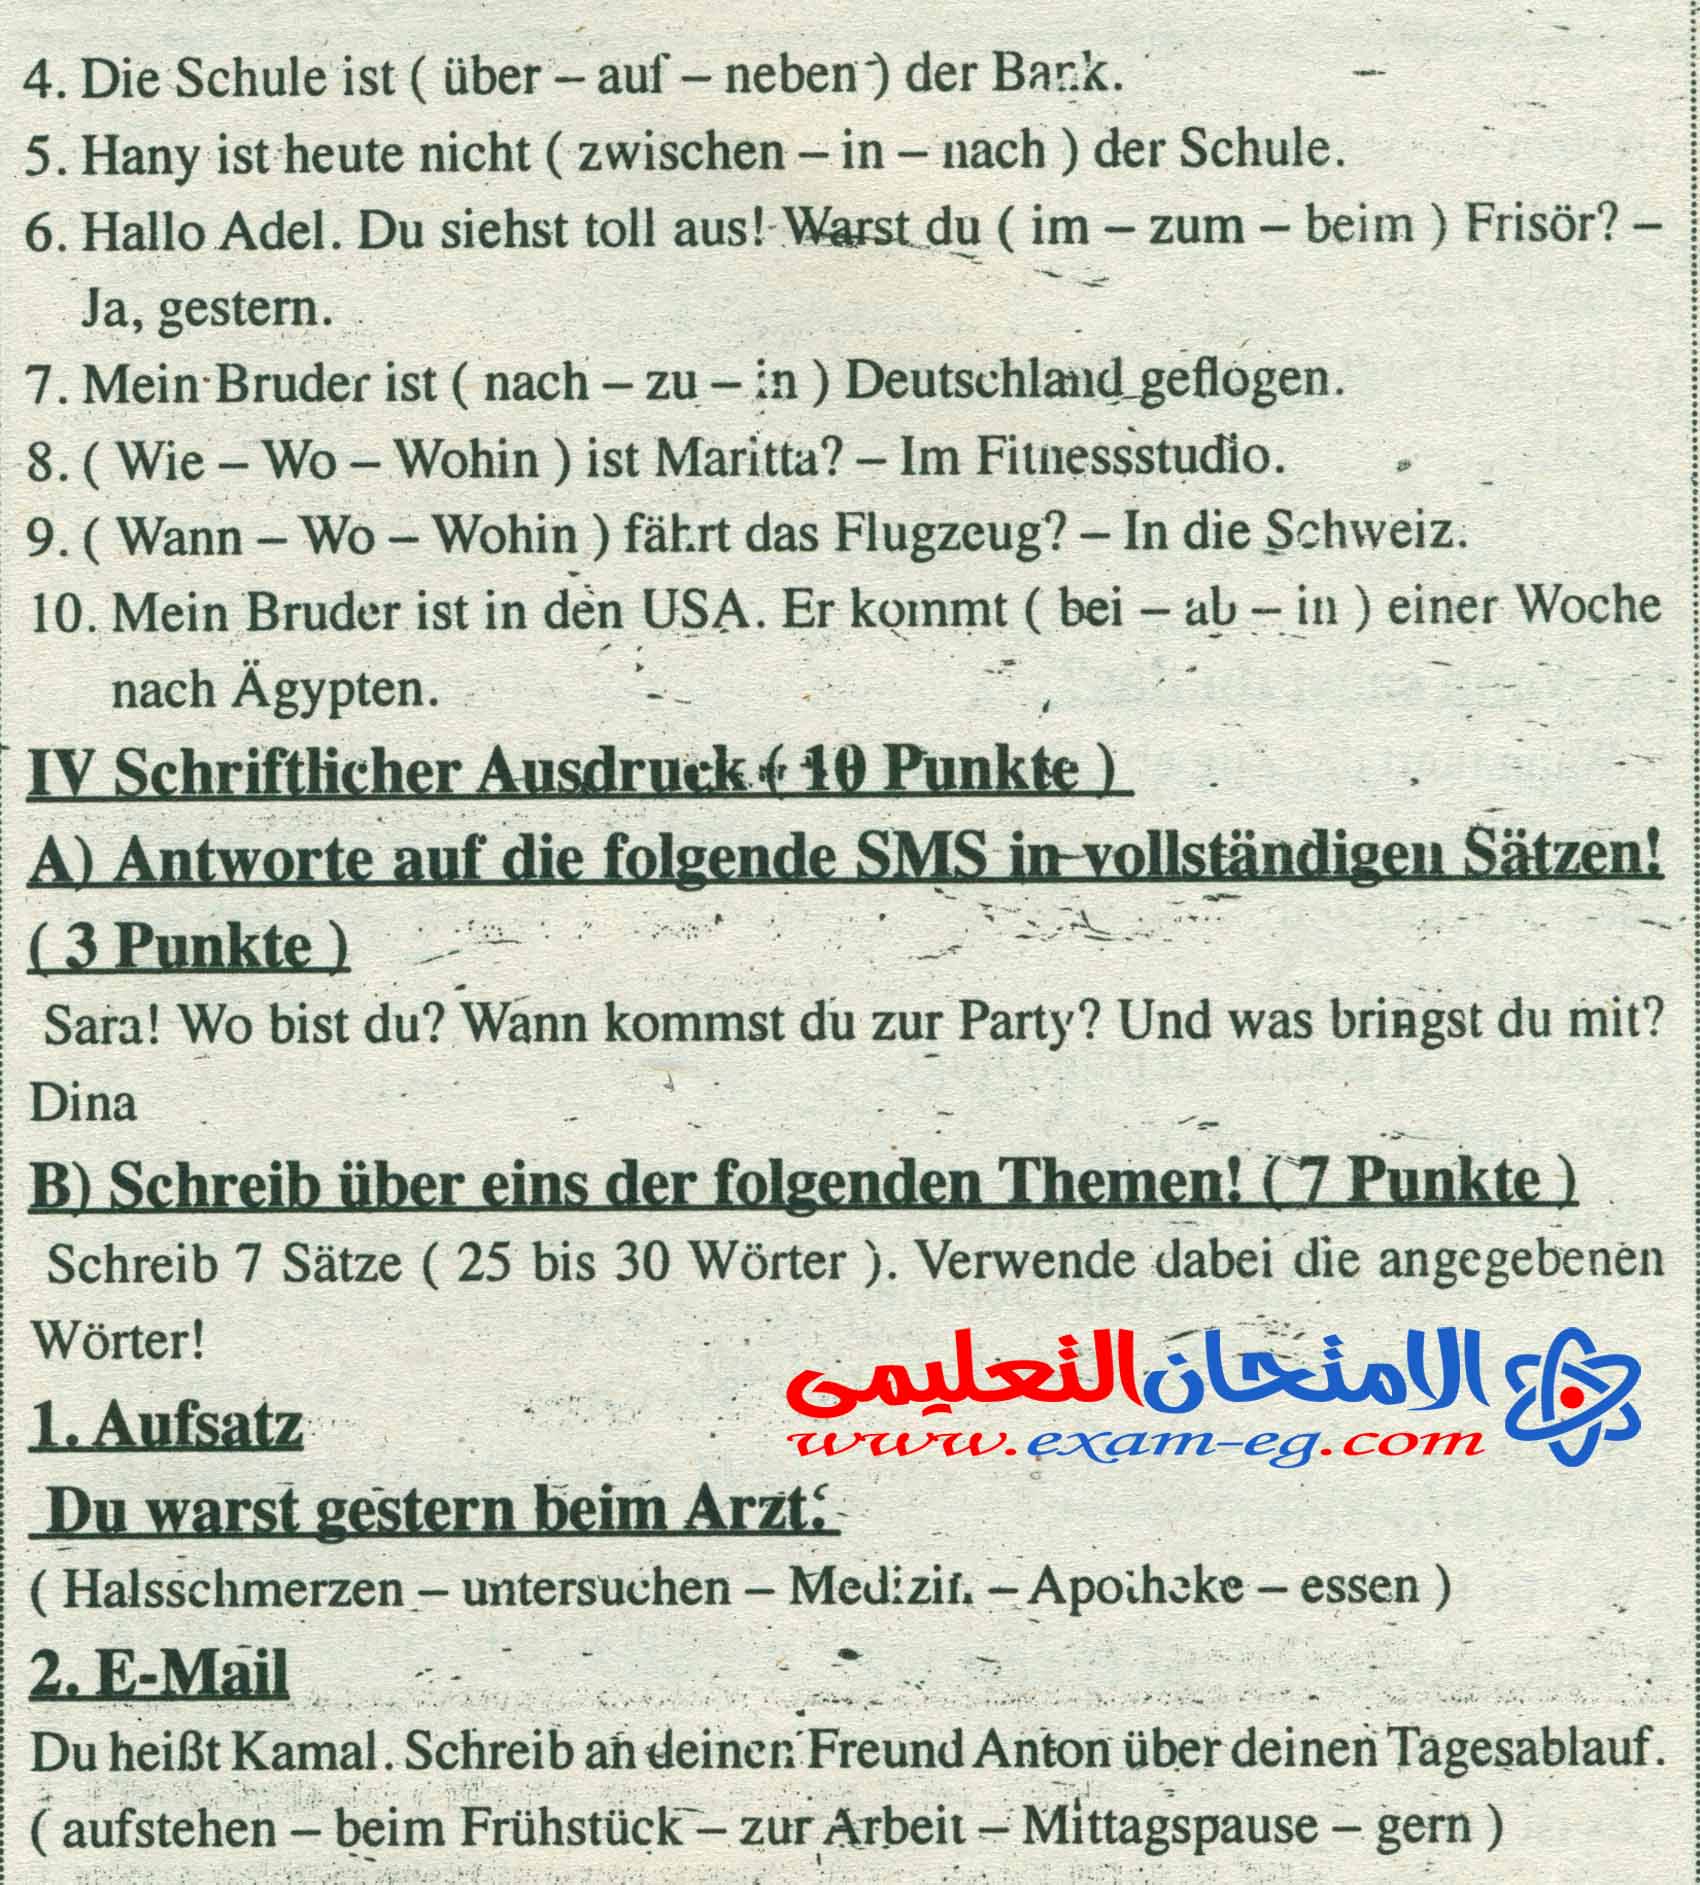 امتحان السودان 2016 في اللغة الالمانية للثانوية العامة + الاجابة النموذجية exam-eg.com_14610994